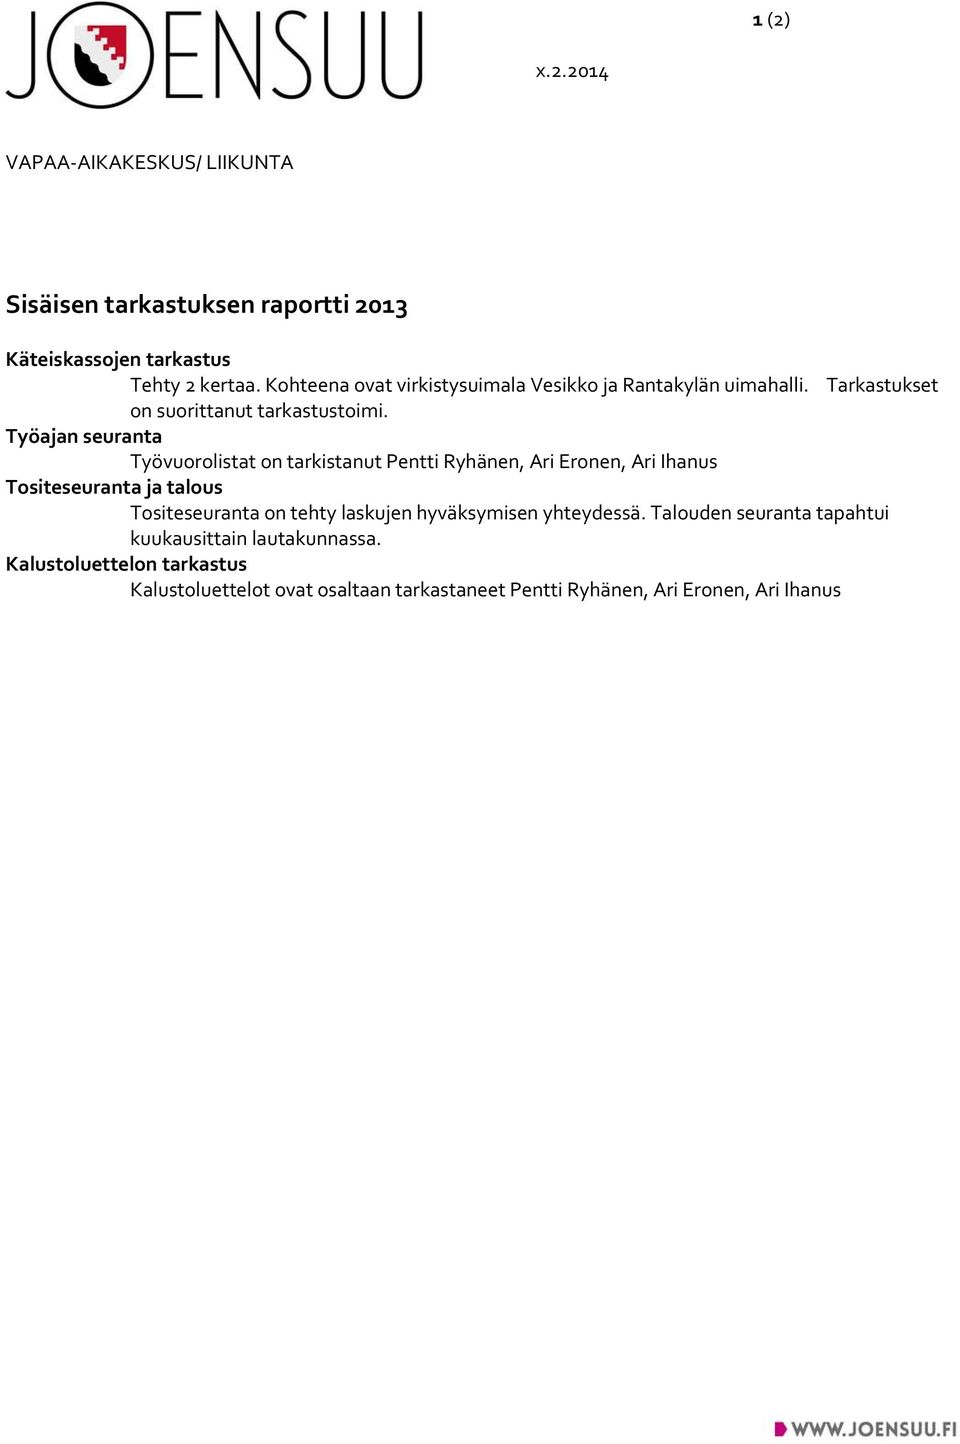 Työajan seuranta Työvuorolistat on tarkistanut Pentti Ryhänen, Ari Eronen, Ari Ihanus Tositeseuranta ja talous Tositeseuranta on tehty